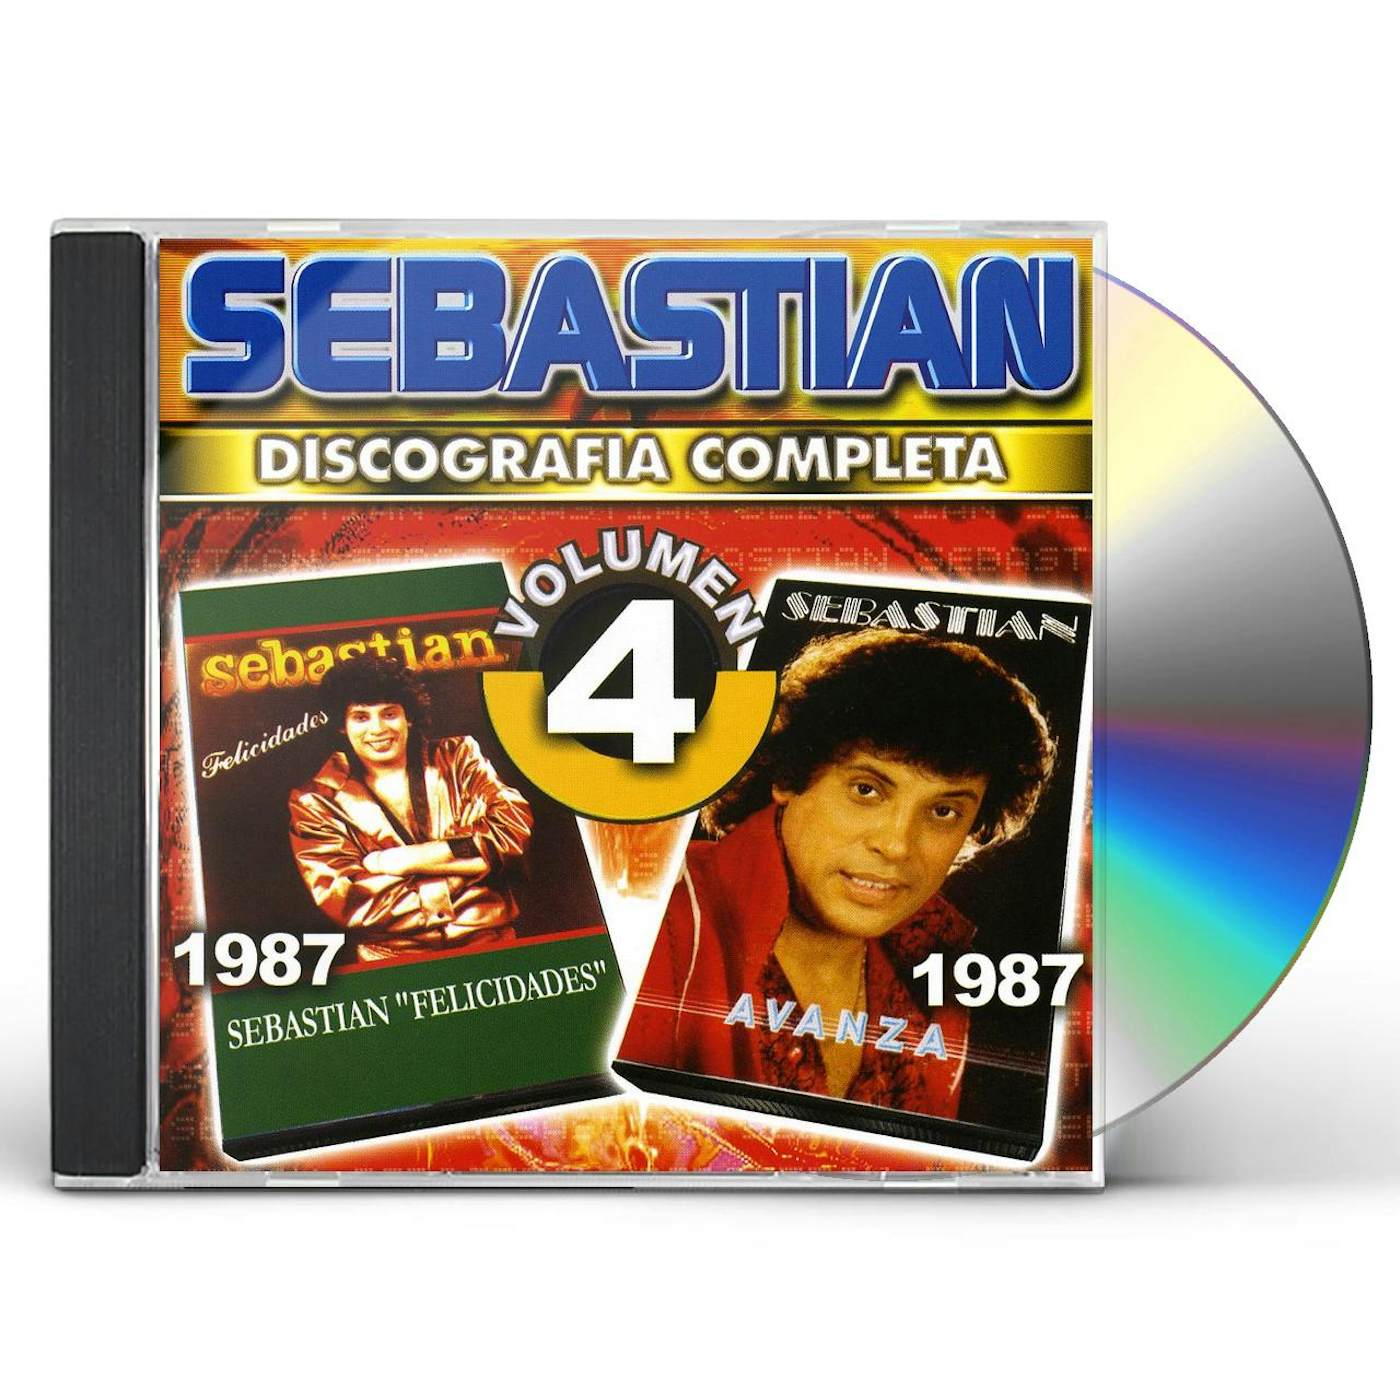 SebastiAn DISCOGRAFIA COMPLETA 4 CD